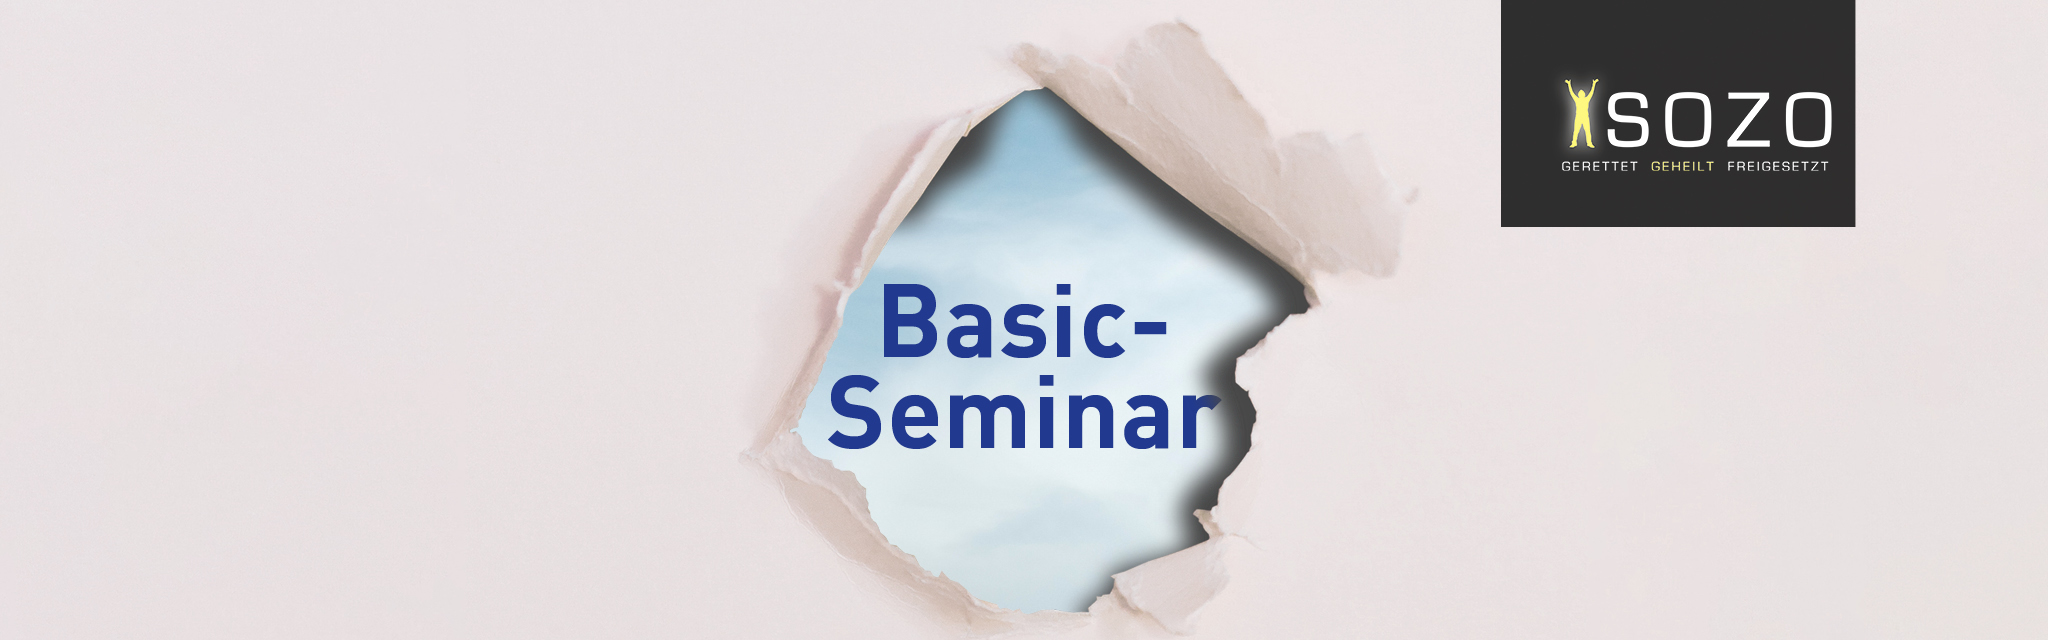 SOZO - Basic Seminar